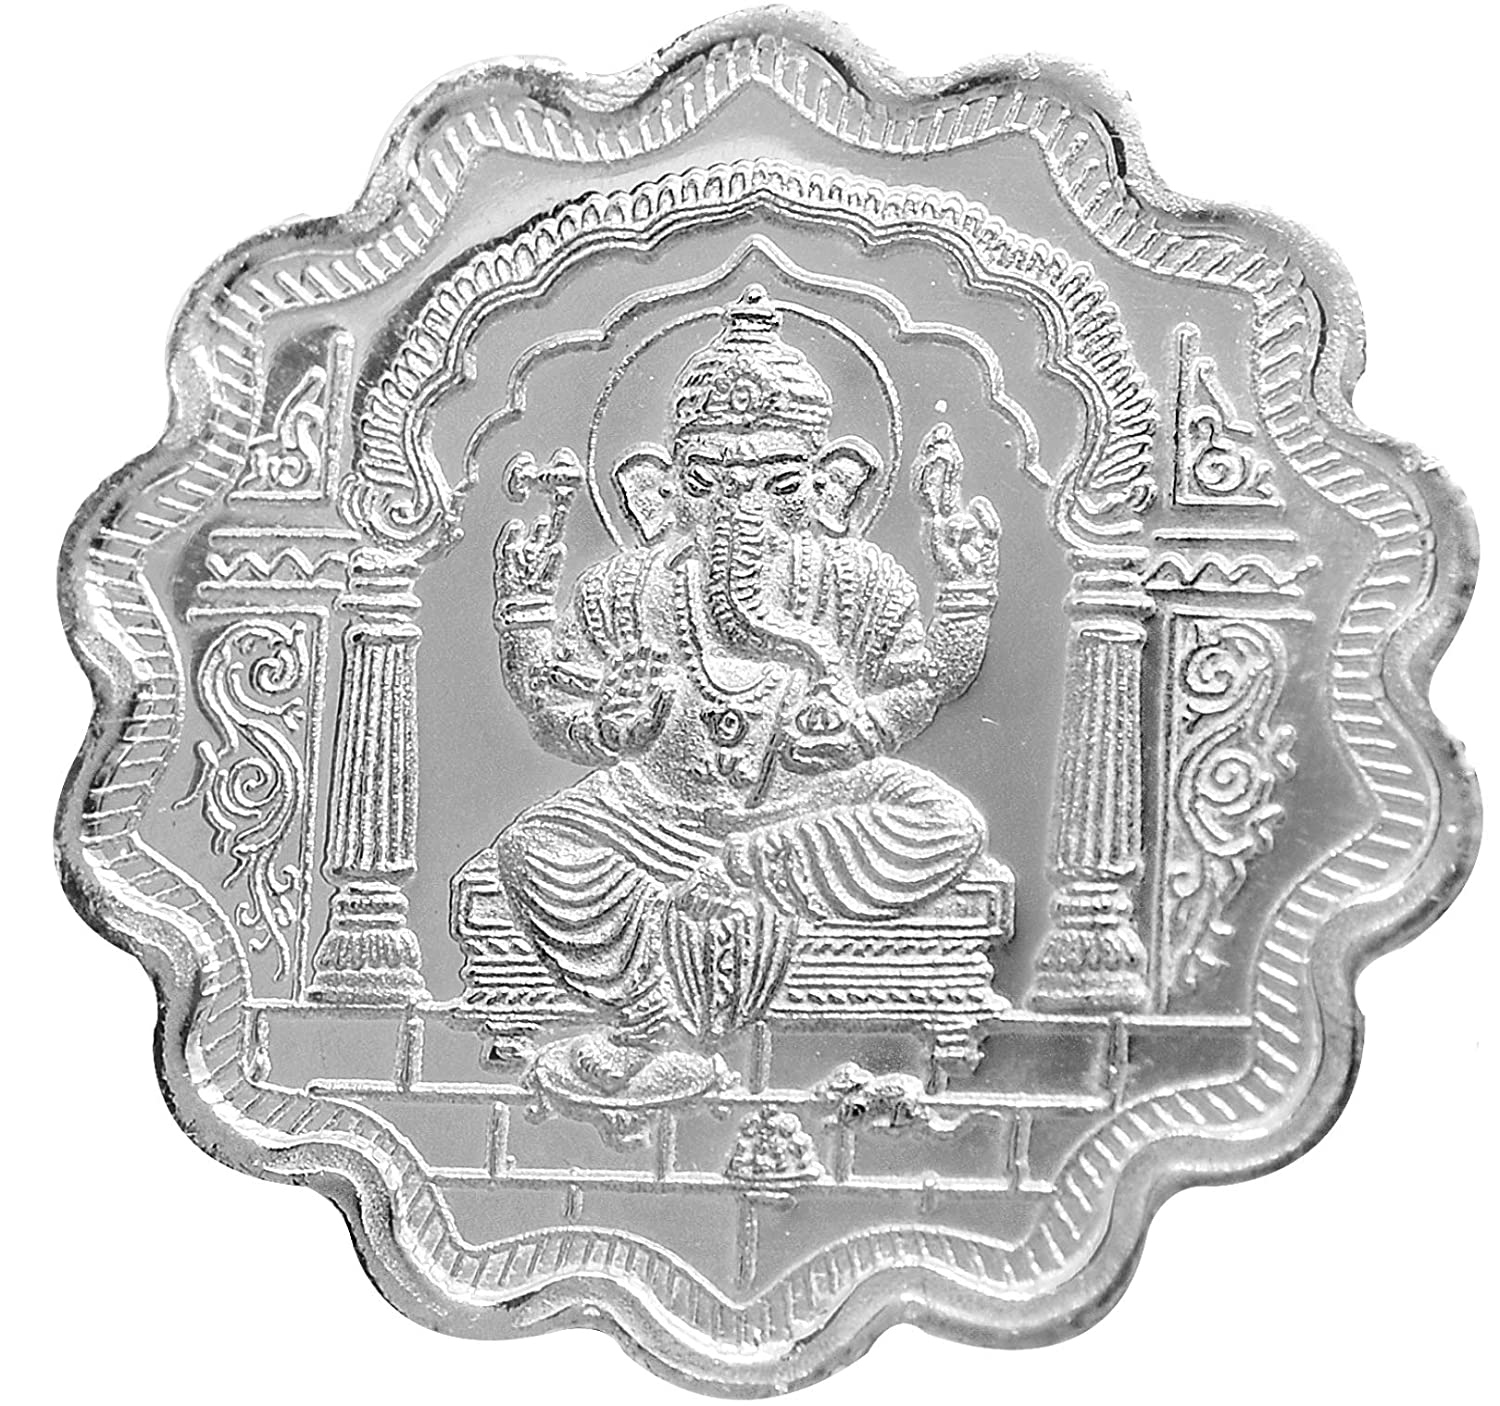 10 gram silver coin